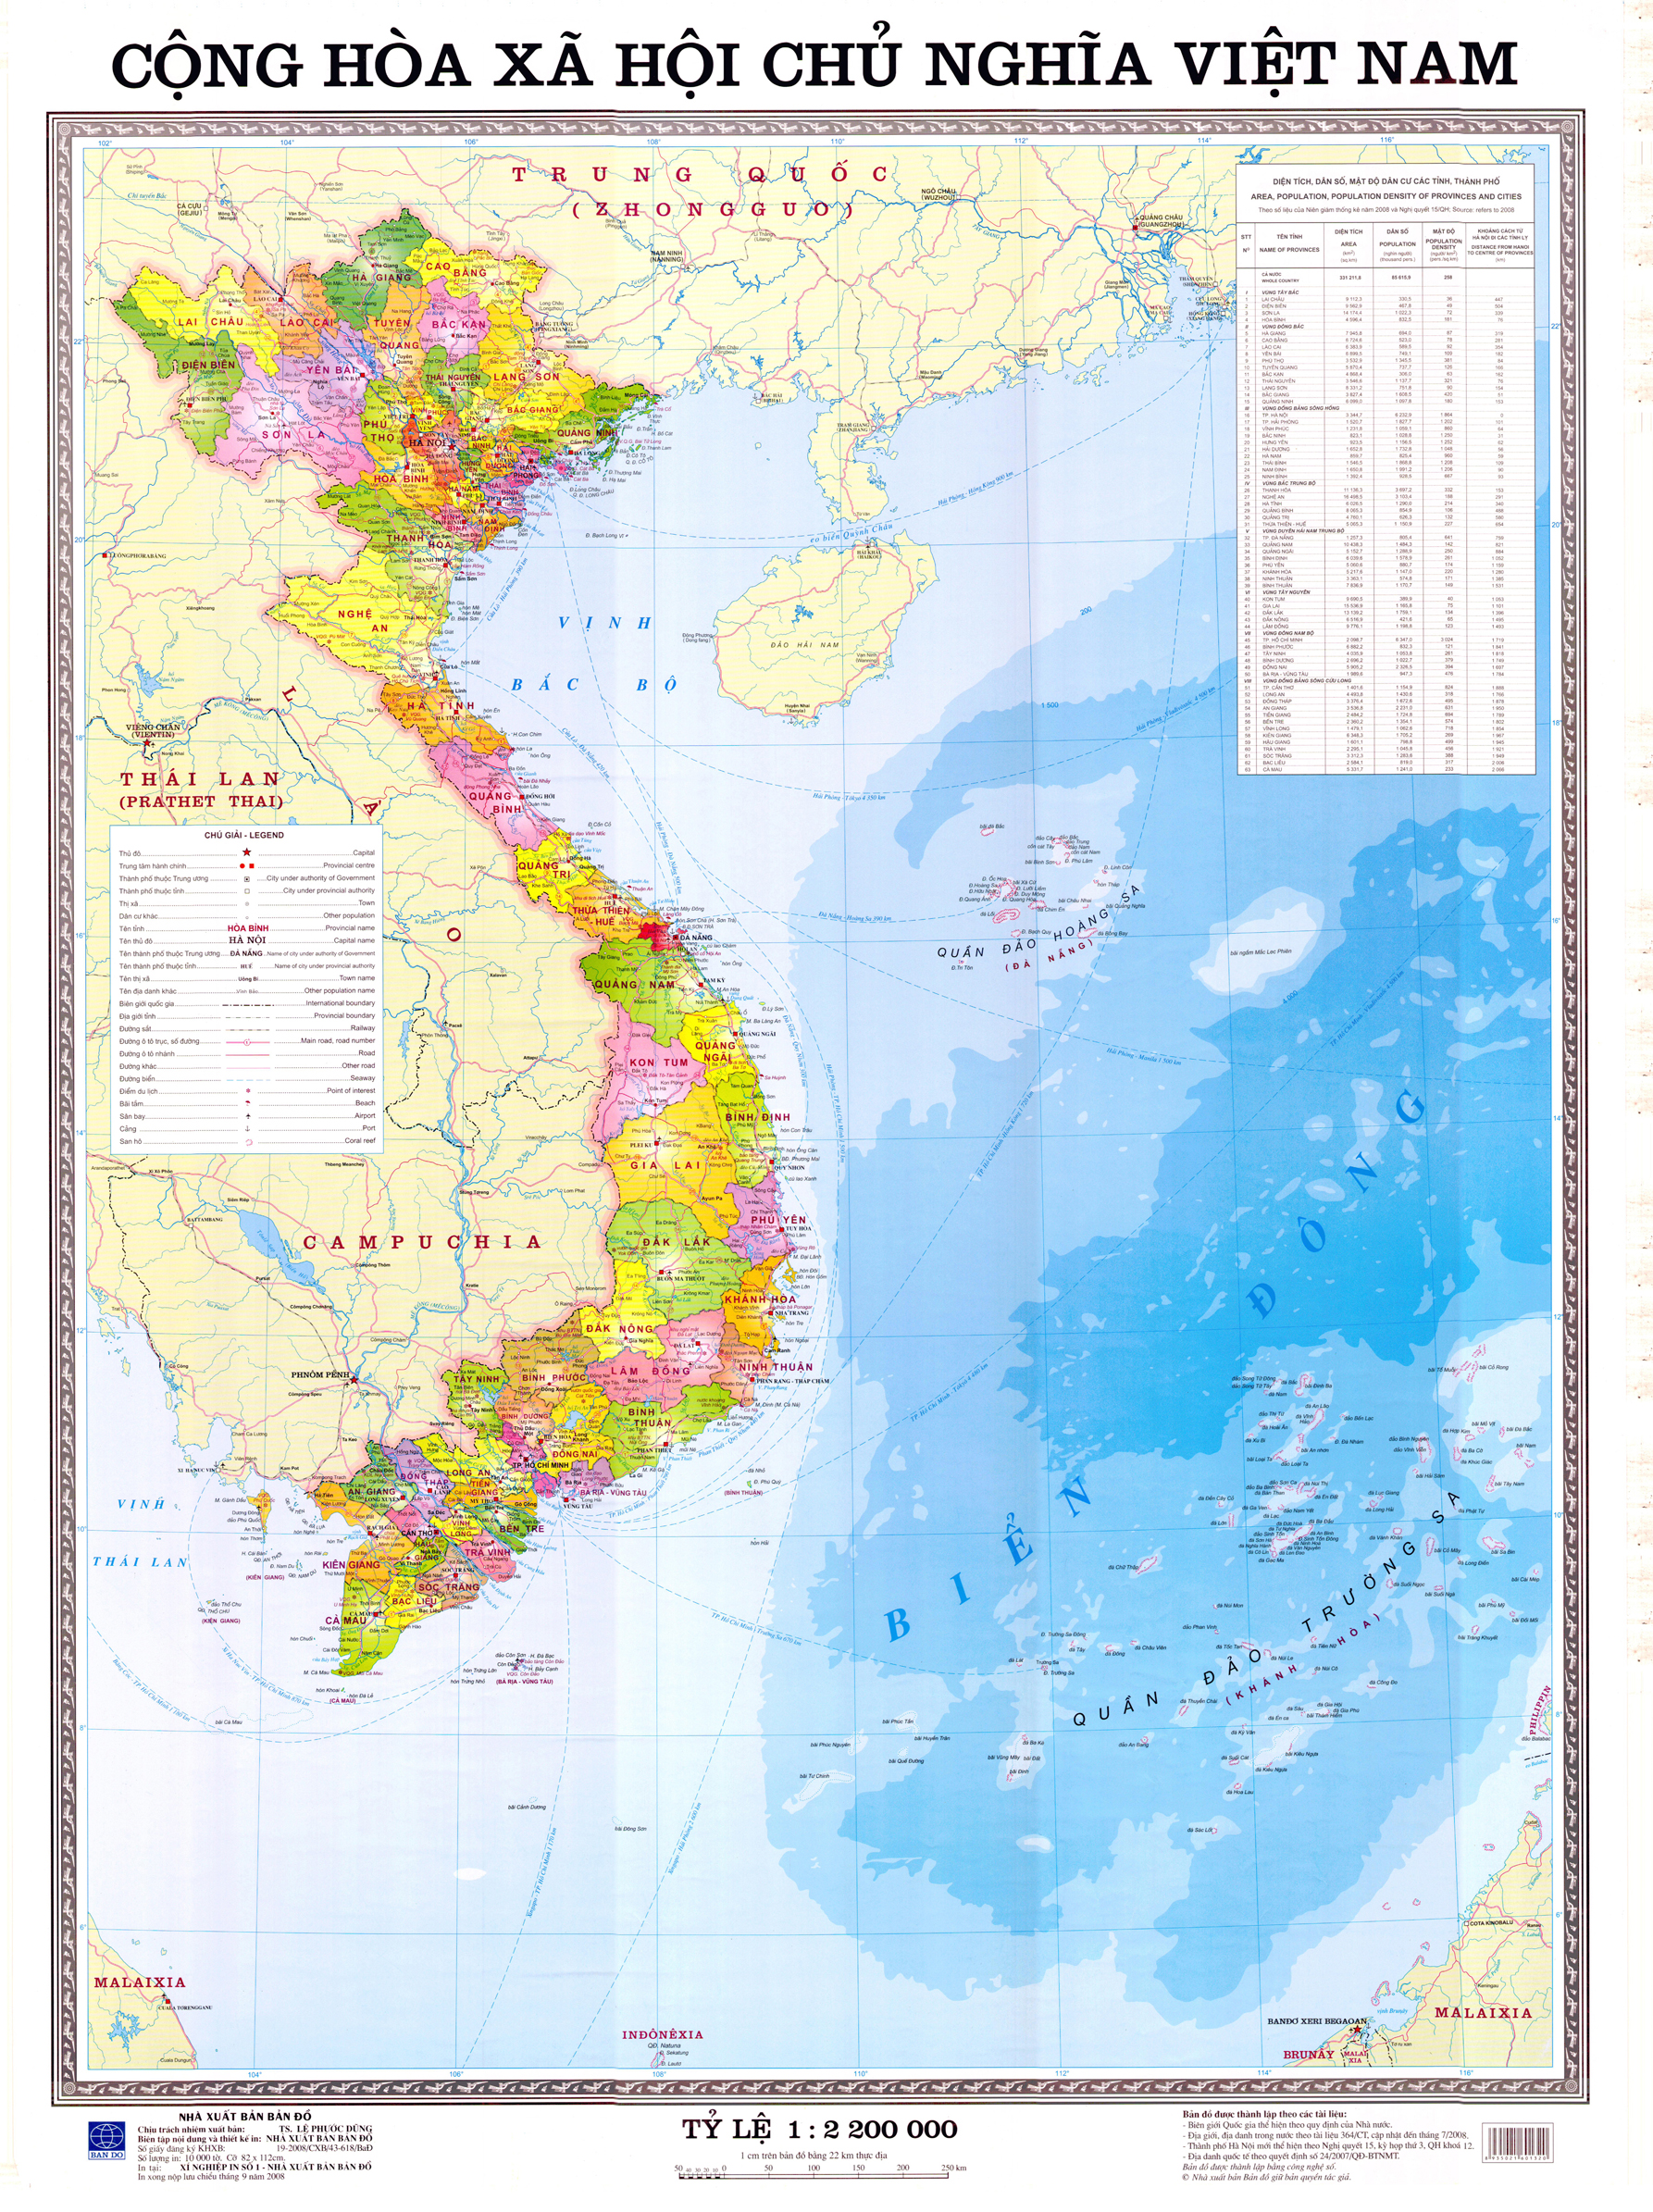 Hình thức thể hiện trên bản đồ chuyên đề trong hệ tọa độ VN2000 được sử dụng rộng rãi và ngày càng đa dạng như bản đồ nền, bản đồ thể chế, bản đồ tỷ lệ, bản đồ các lớp thế và địa chất. Bản đồ VN2000 - Hình thức bản đồ VN2000 là nguồn tư liệu hữu ích để bạn nâng cao kỹ năng thực hiện và thể hiện bản đồ chuyên đề.